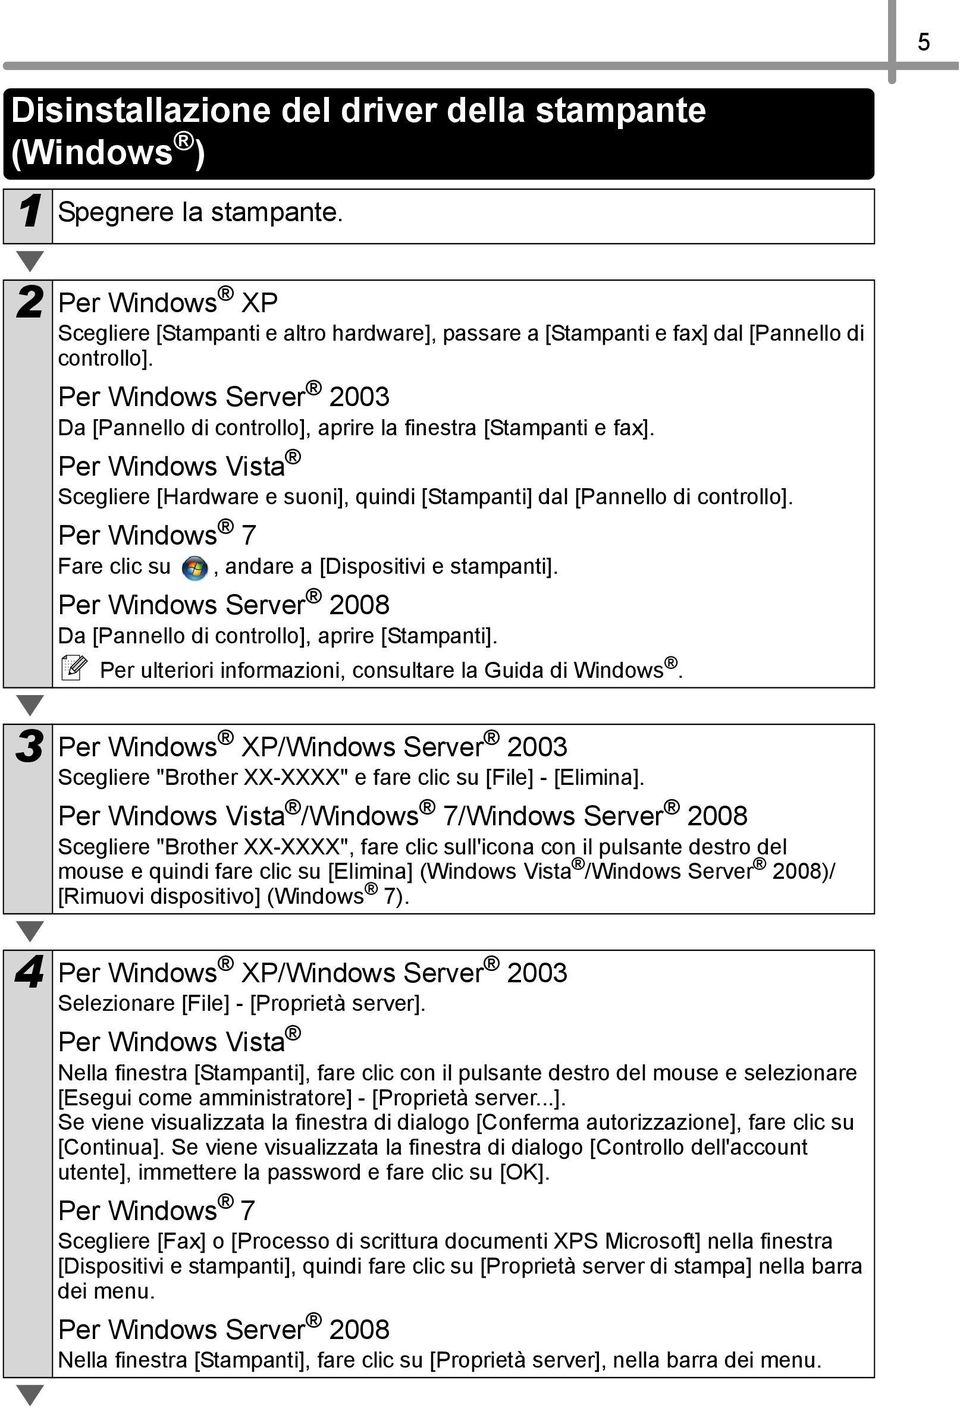 Per Windows 7 Fare clic su, andare a [Dispositivi e stampanti]. Per Windows Server 2008 Da [Pannello di controllo], aprire [Stampanti]. Per ulteriori informazioni, consultare la Guida di Windows.